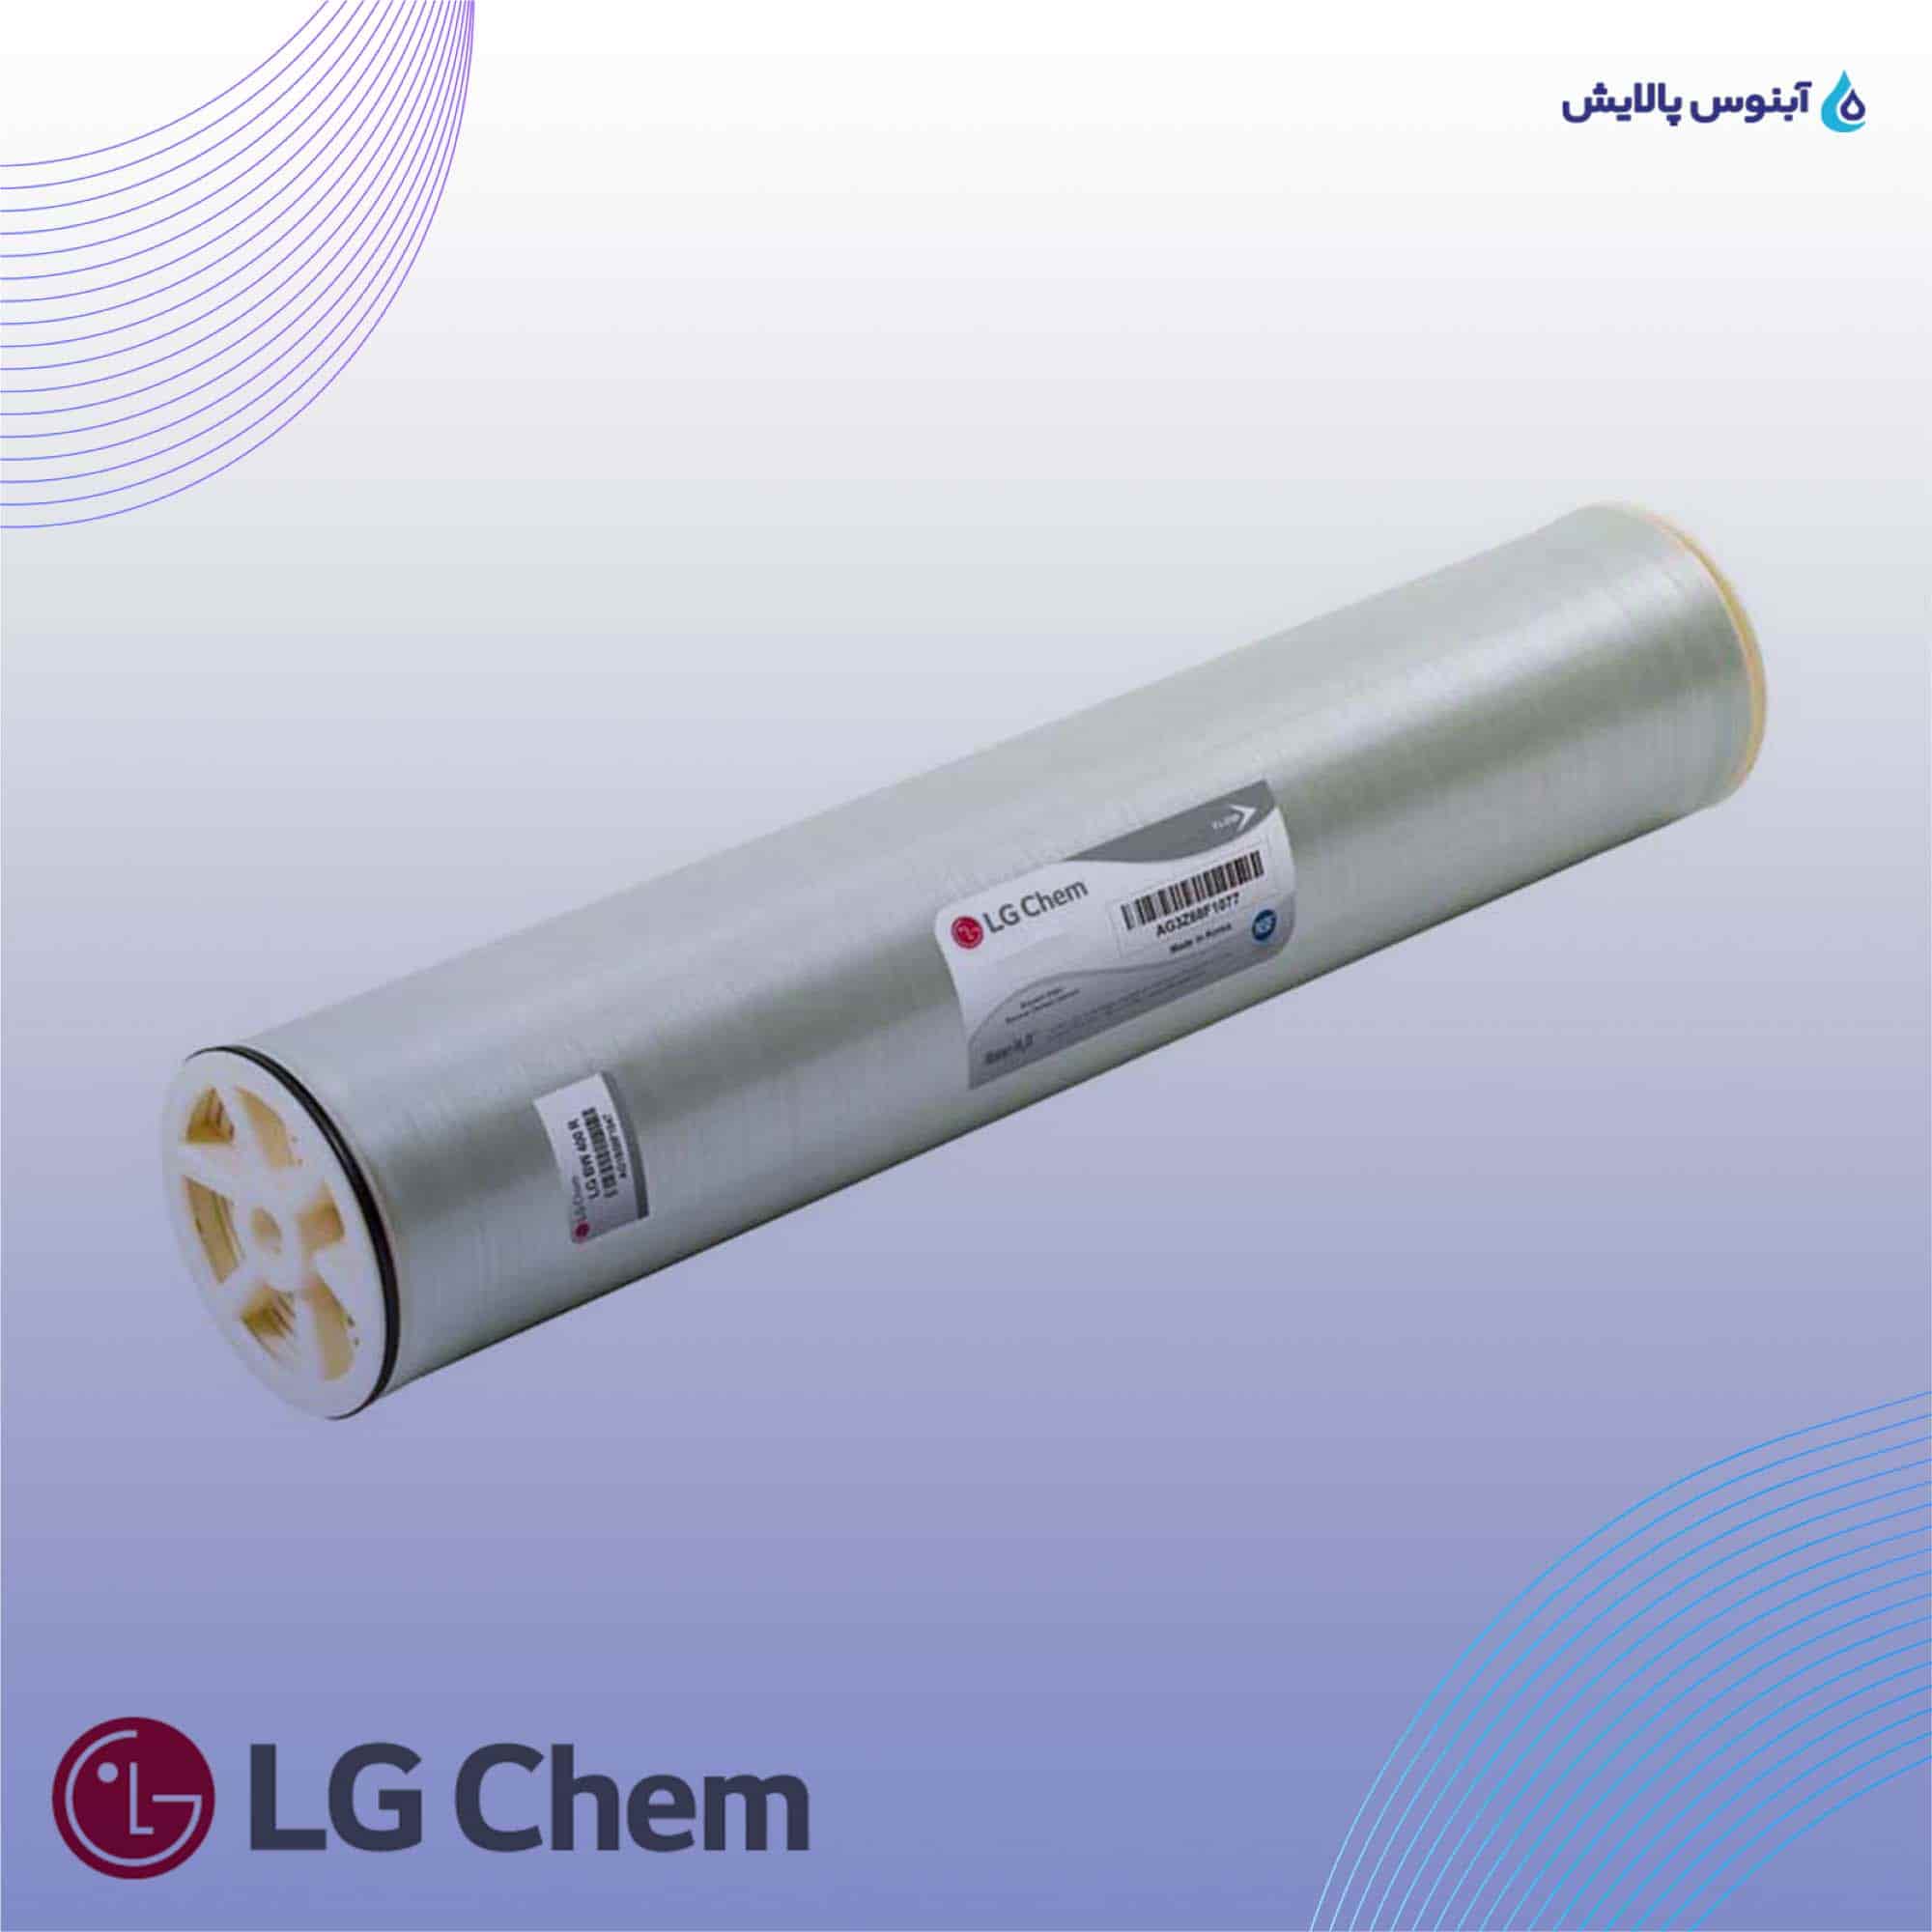 ممبران دریایی 8 اینچ ال جی کم (LG Chem) مدل LG SW 440 ES